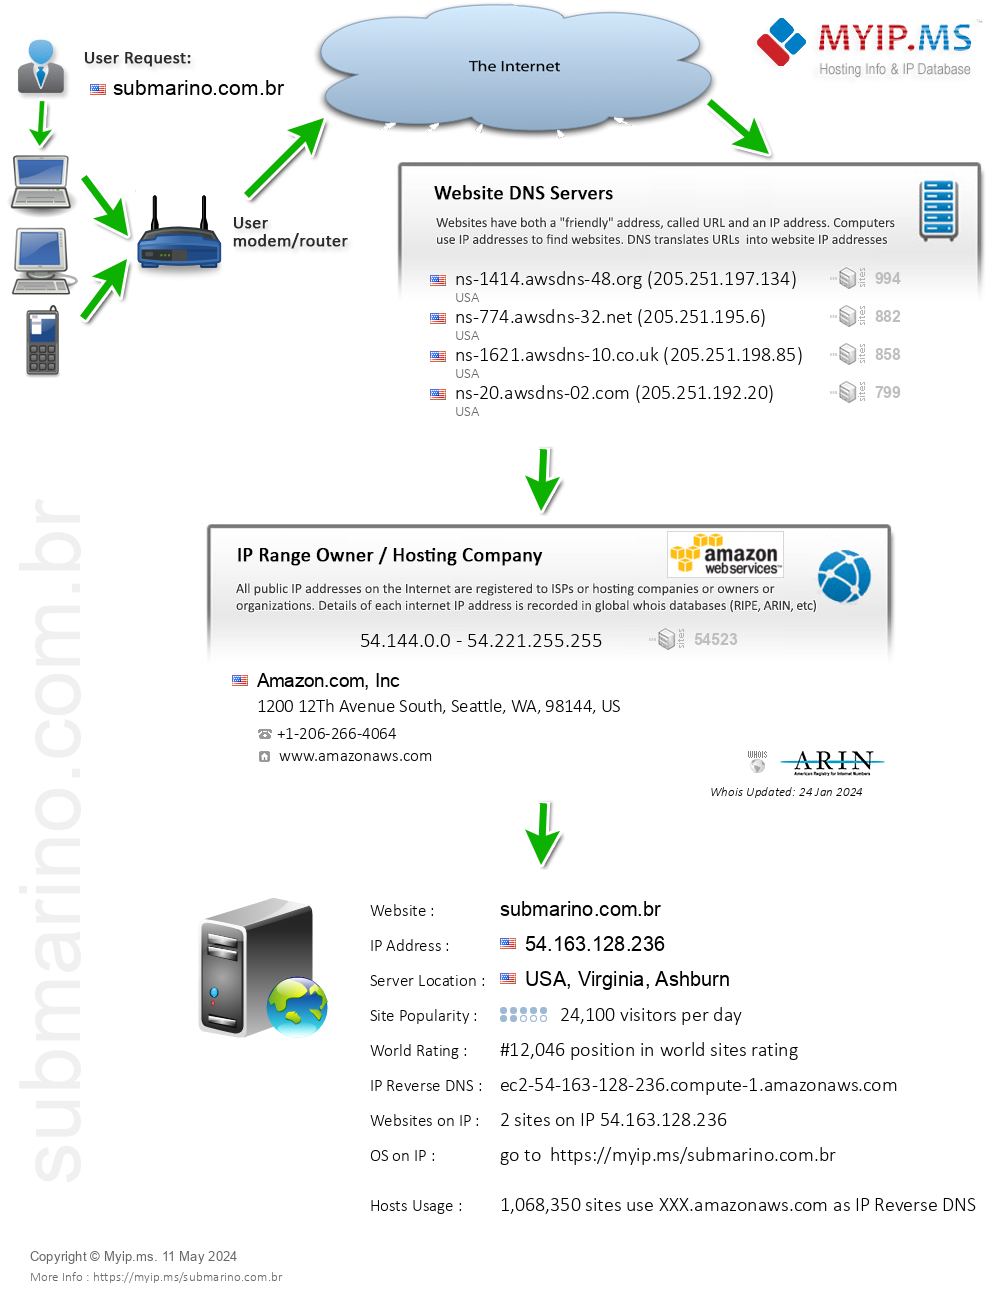 Submarino.com.br - Website Hosting Visual IP Diagram